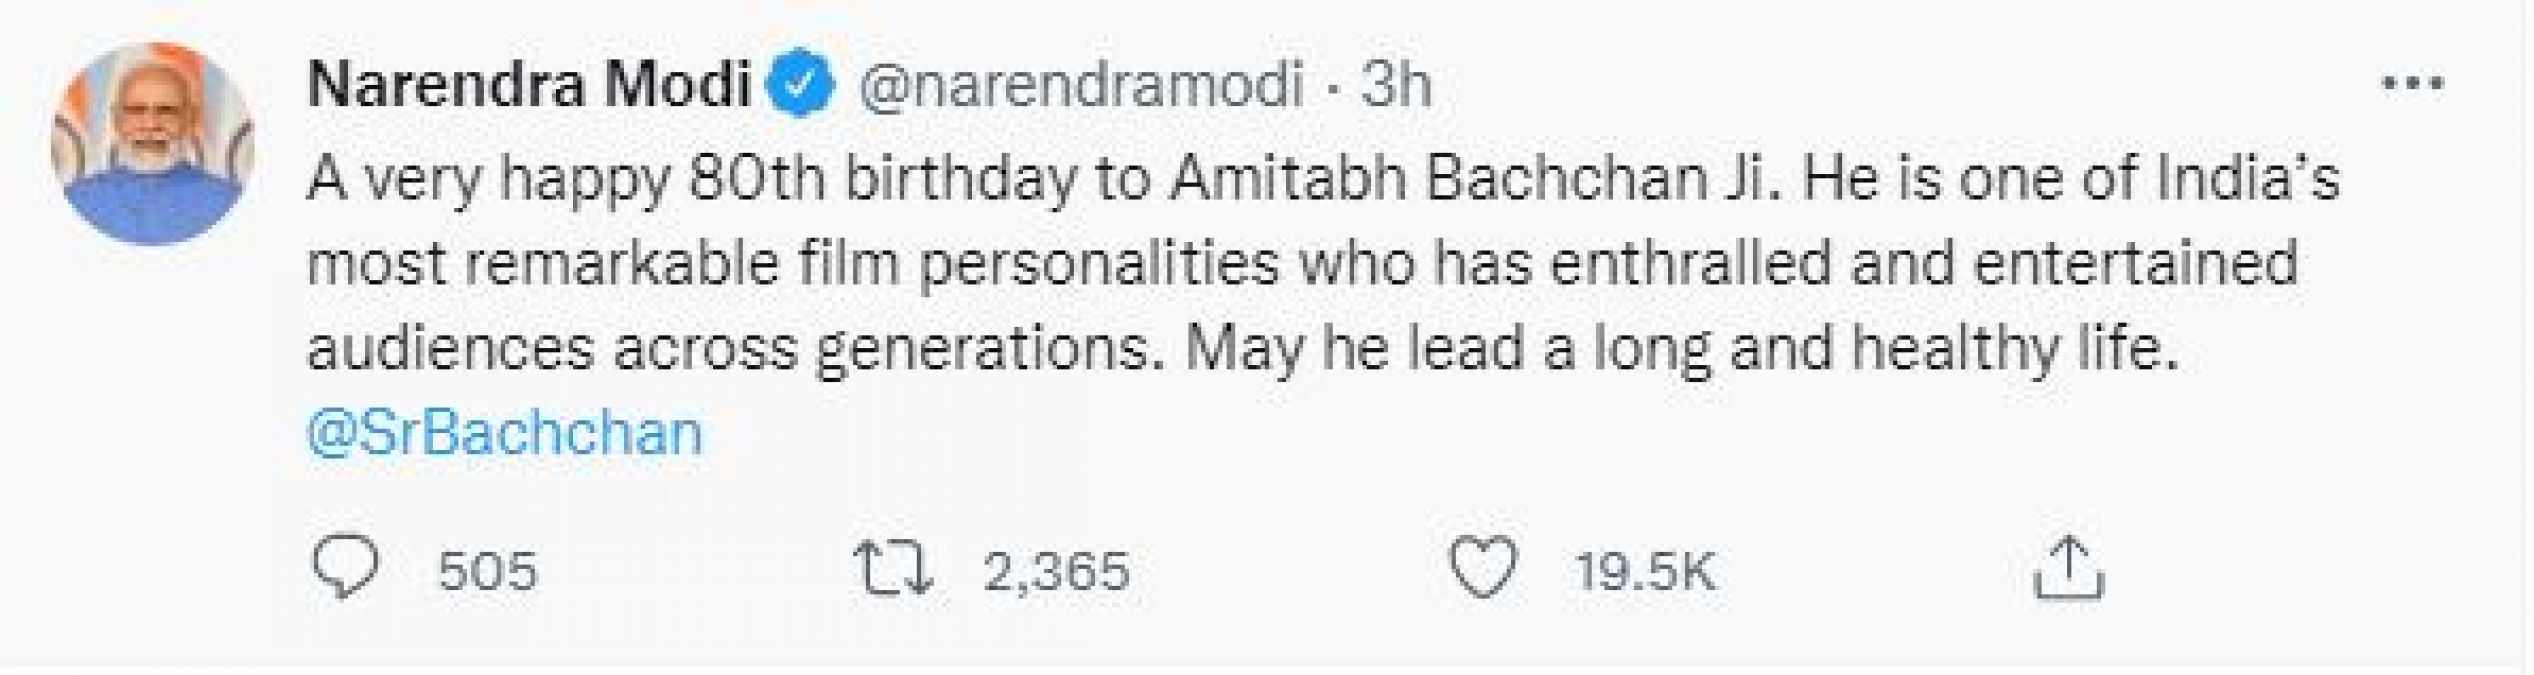 PM मोदी ने स्पेशल नोट लिखकर दी अमिताभ बच्चन को जन्मदिन की बधाई